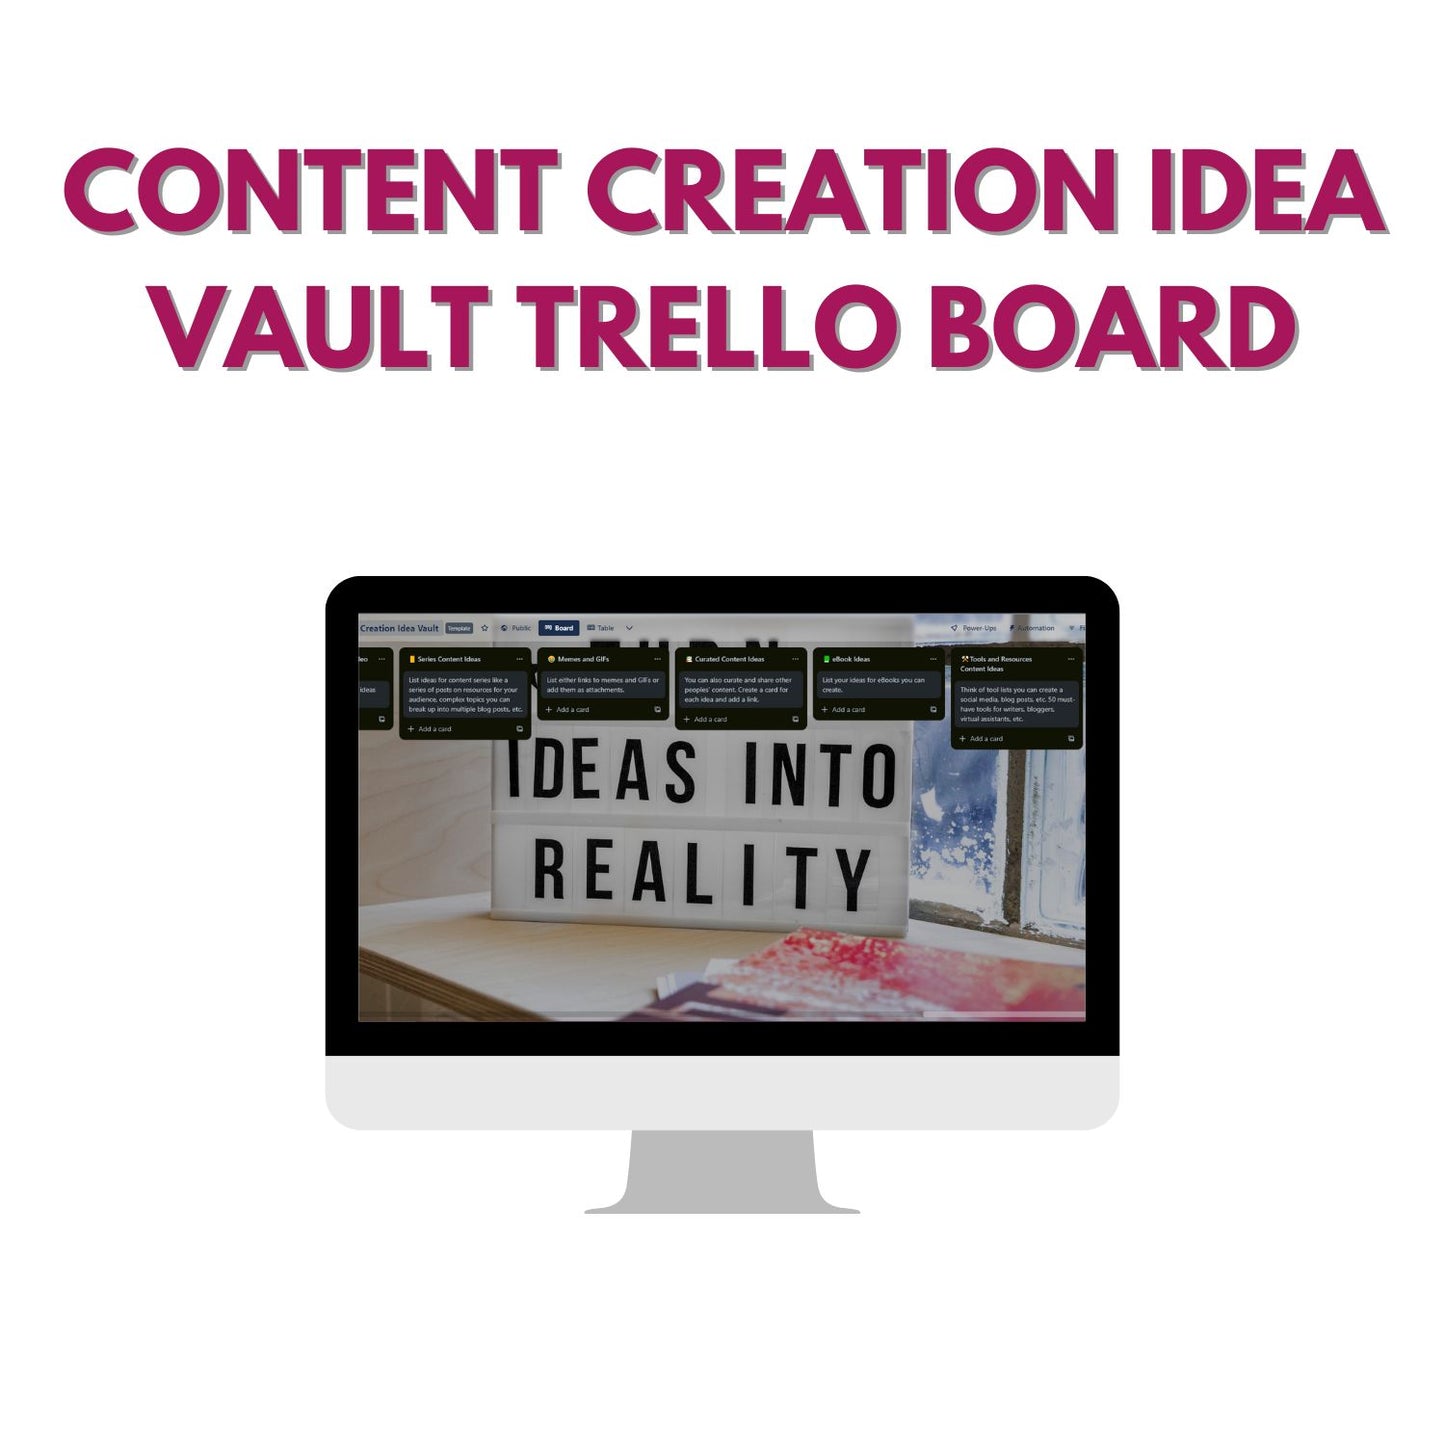 The Content Creation Idea Vault Trello Board